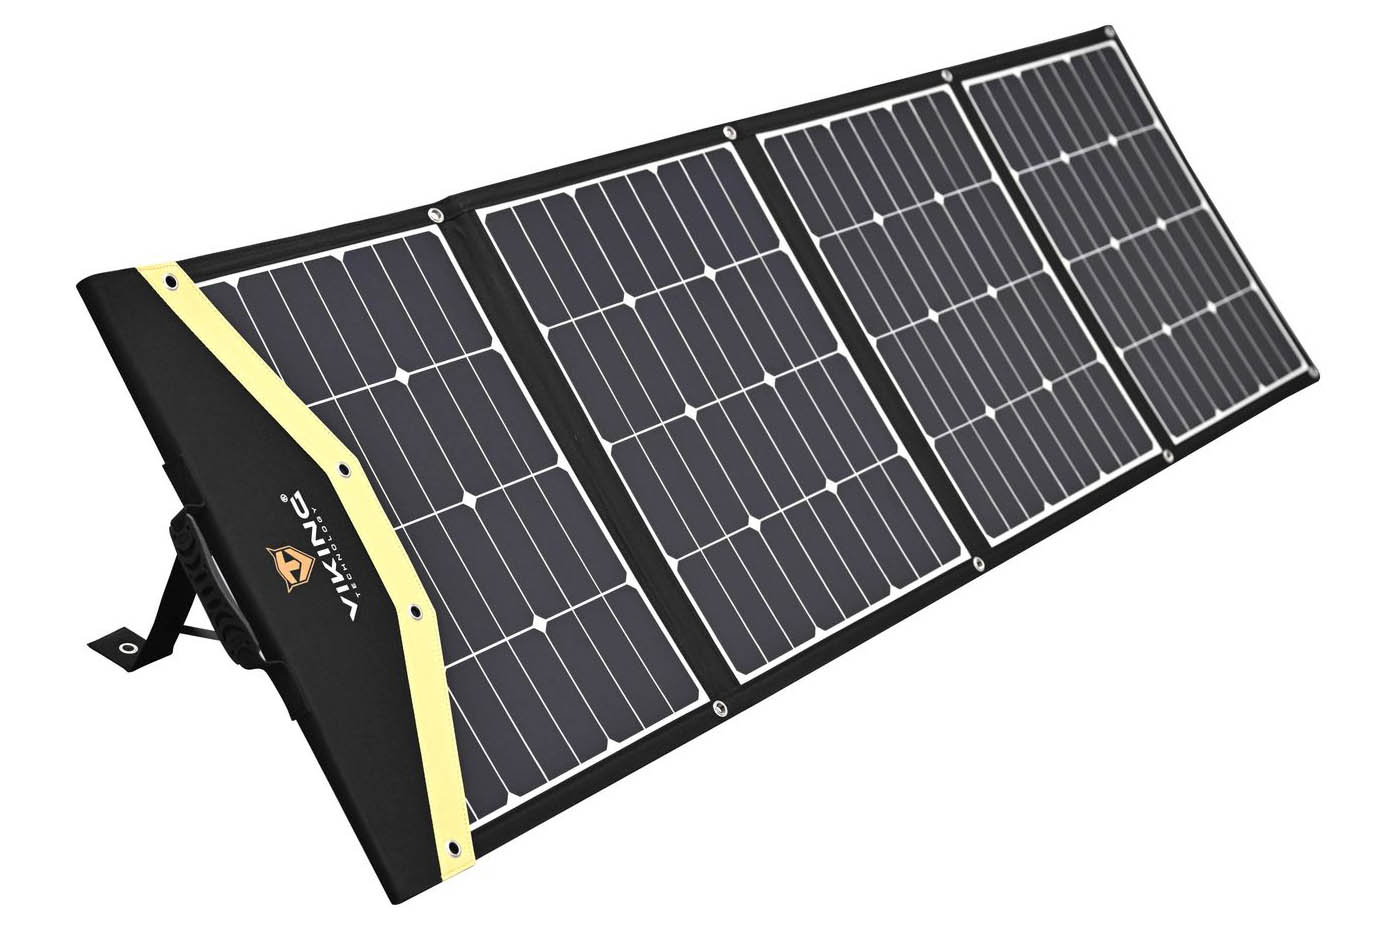 Solární panel Viking L180 VSPL180